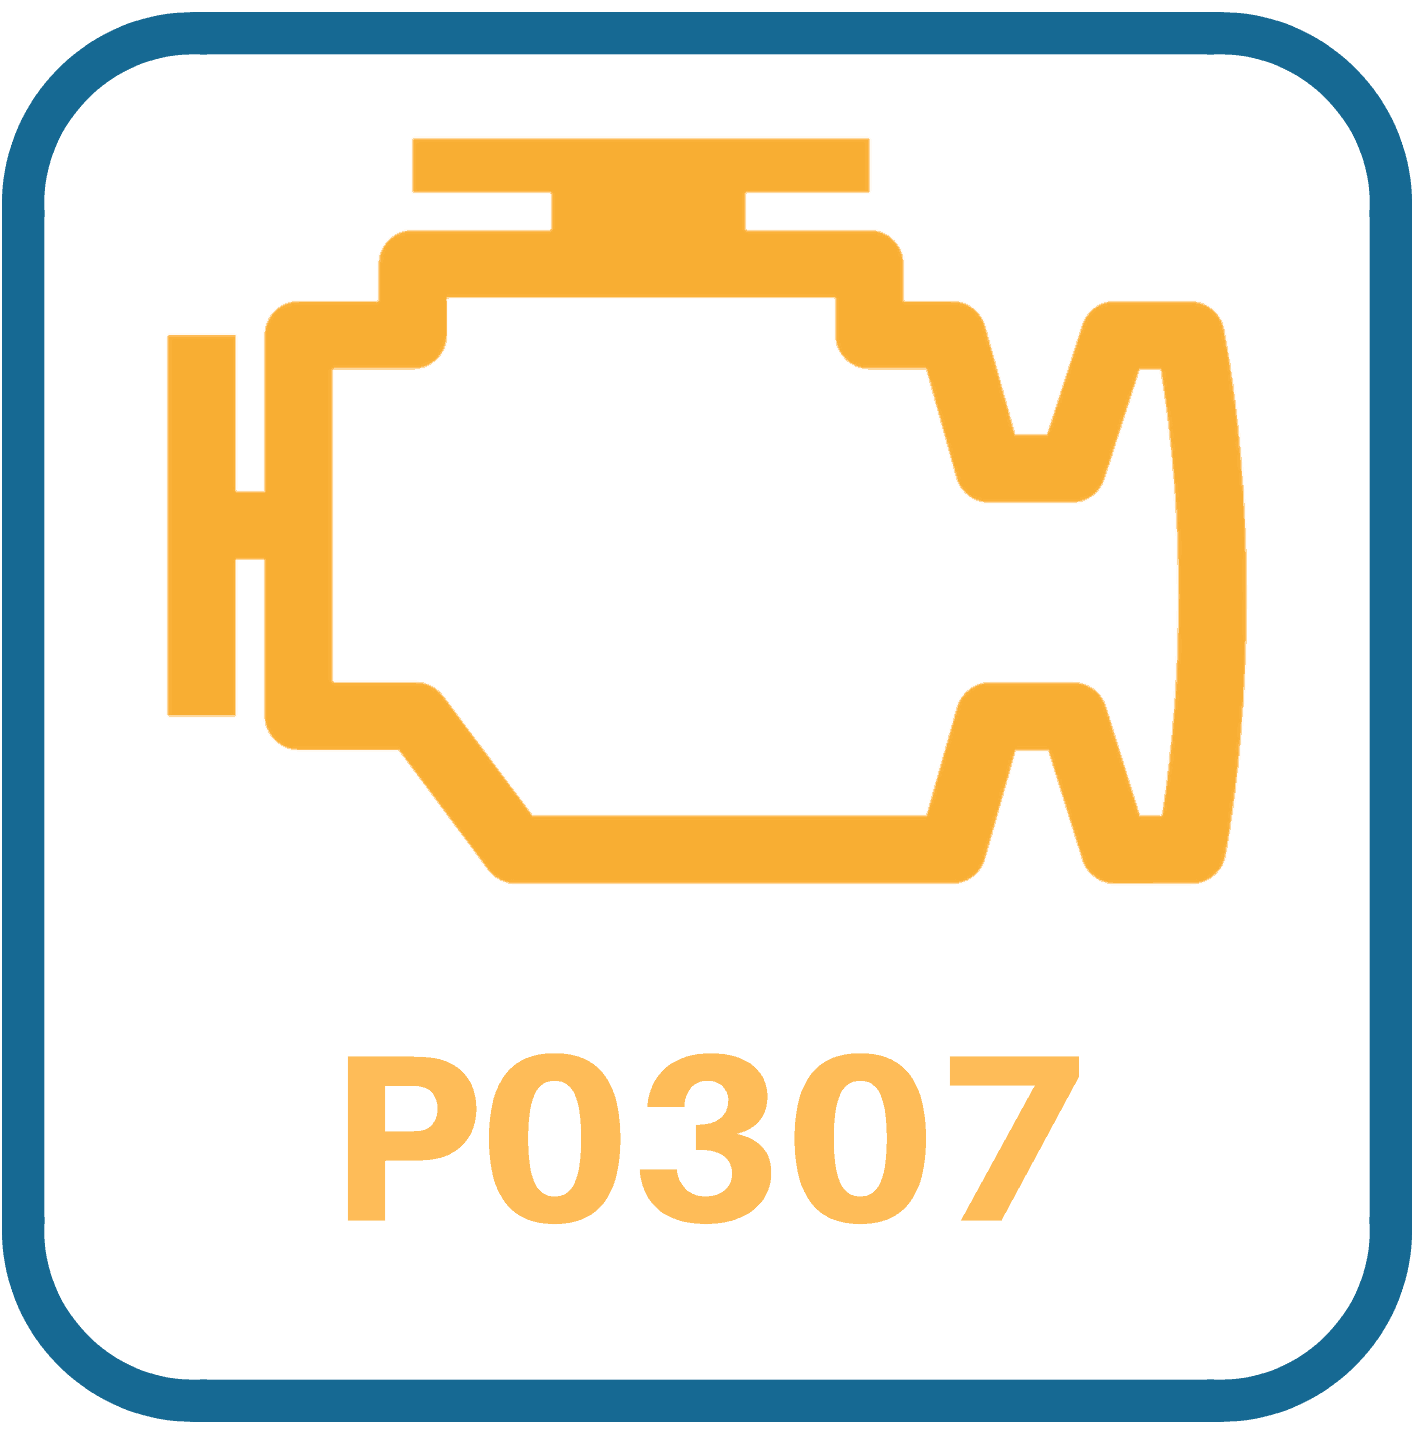 Mazda Miata P0307 Diagnosis